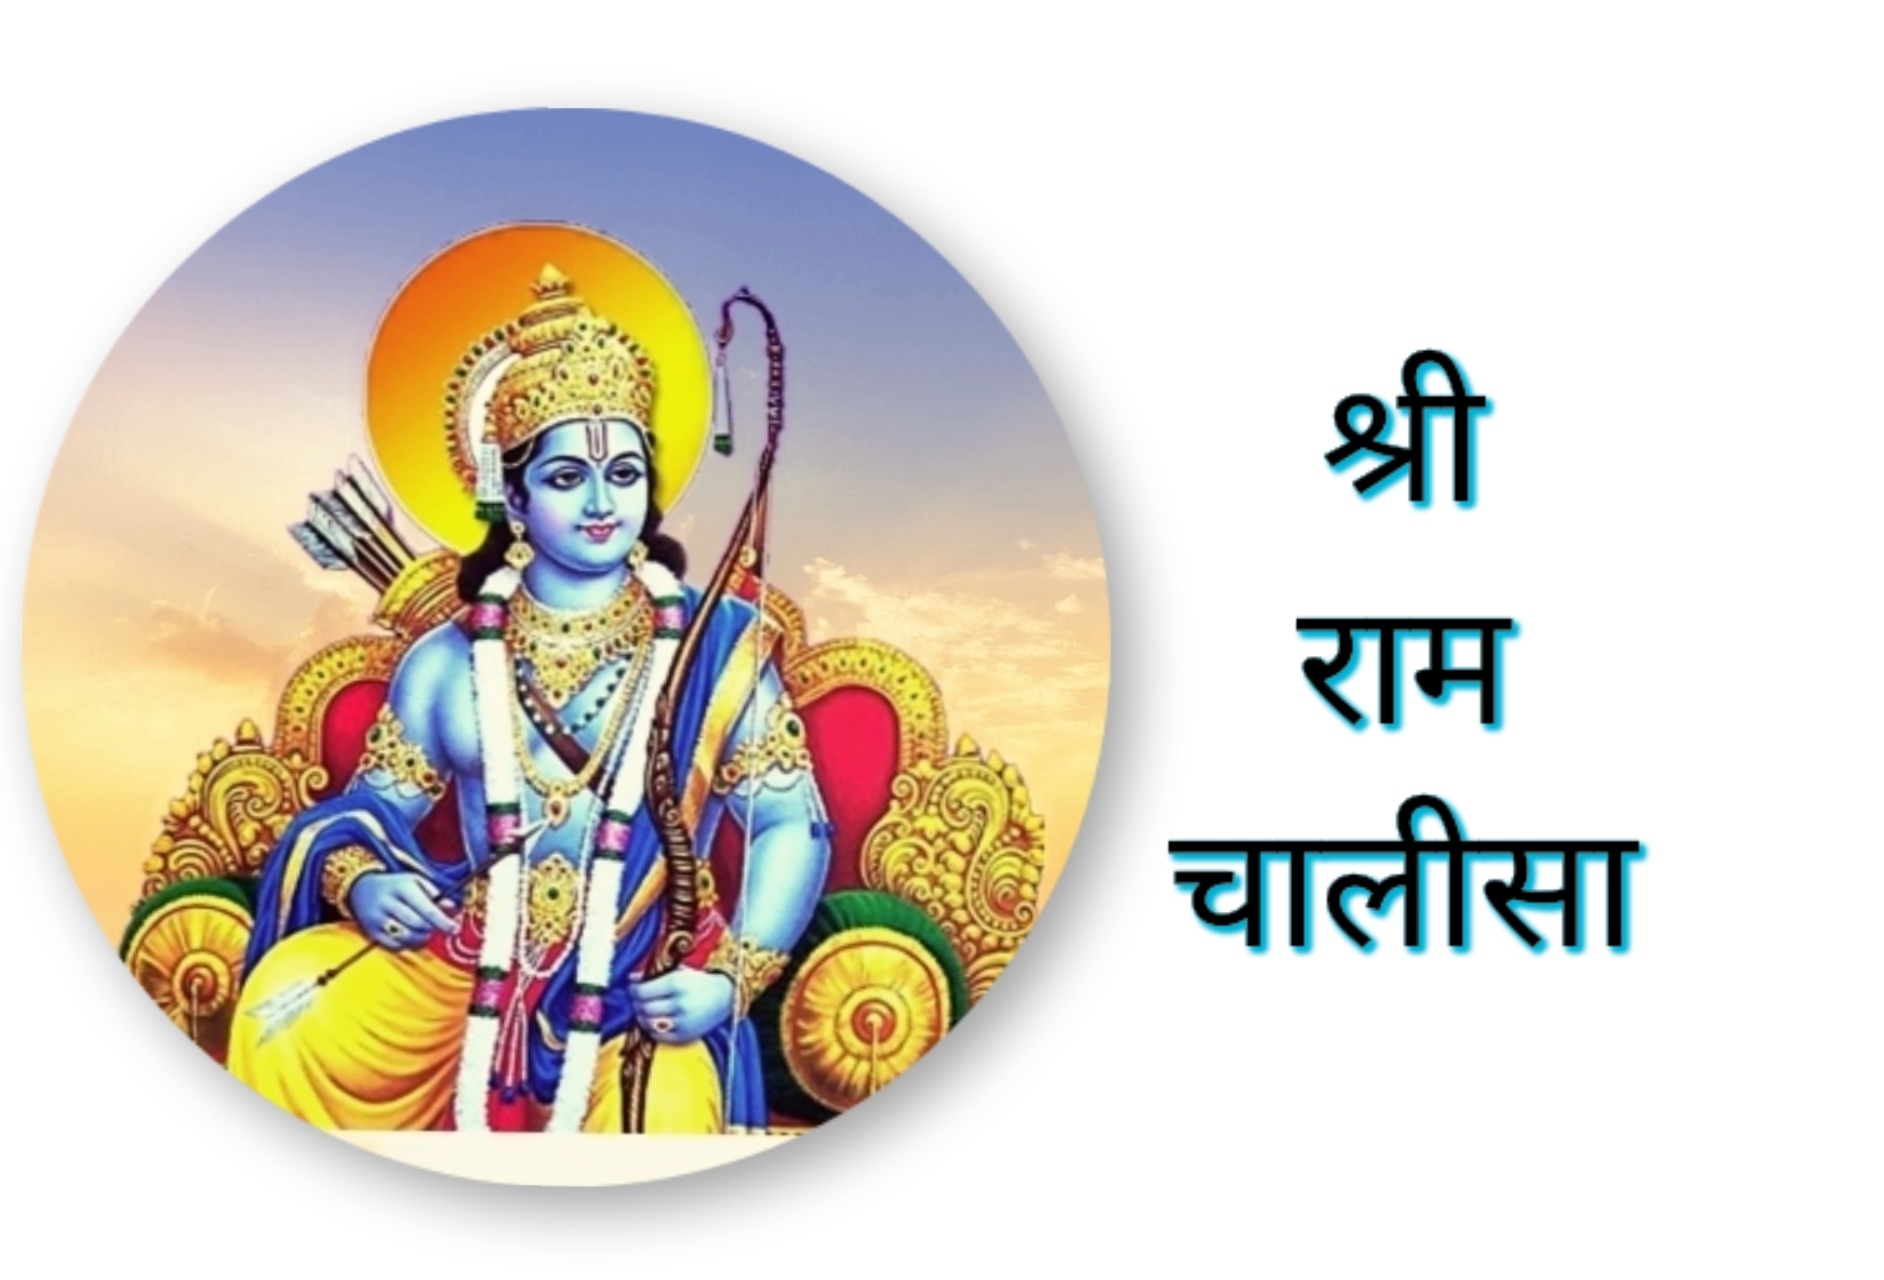 Shri Ram Chalisa